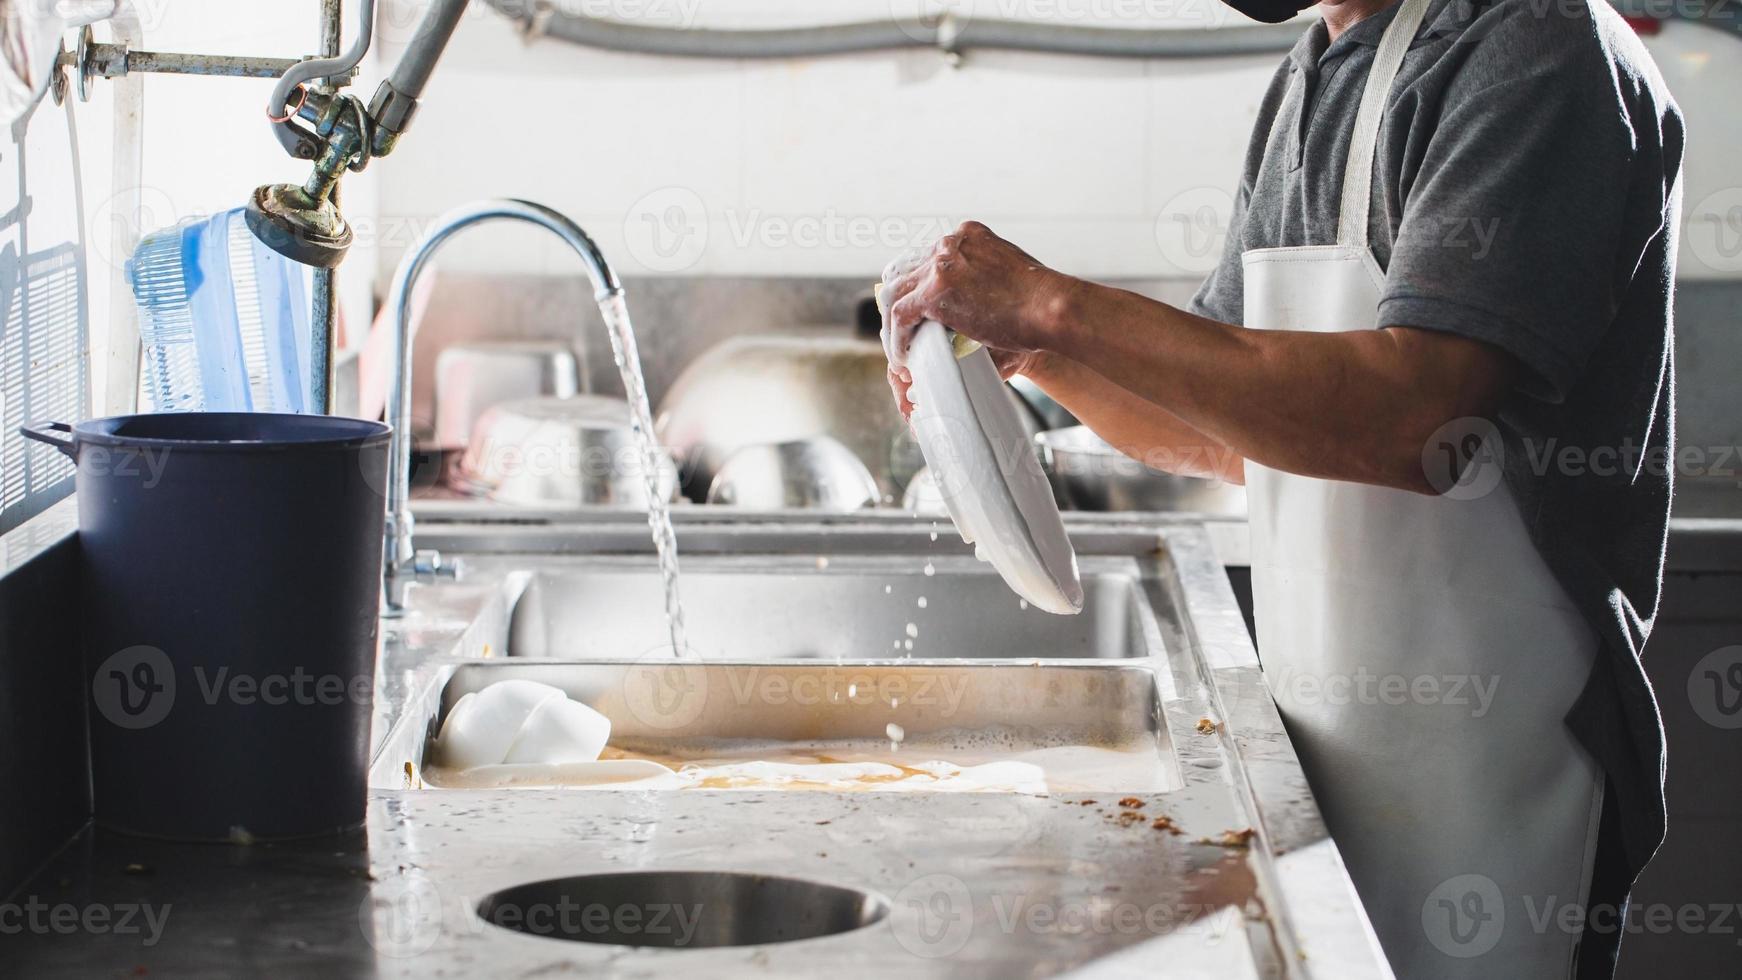 lavando louça na pia do restaurante foto